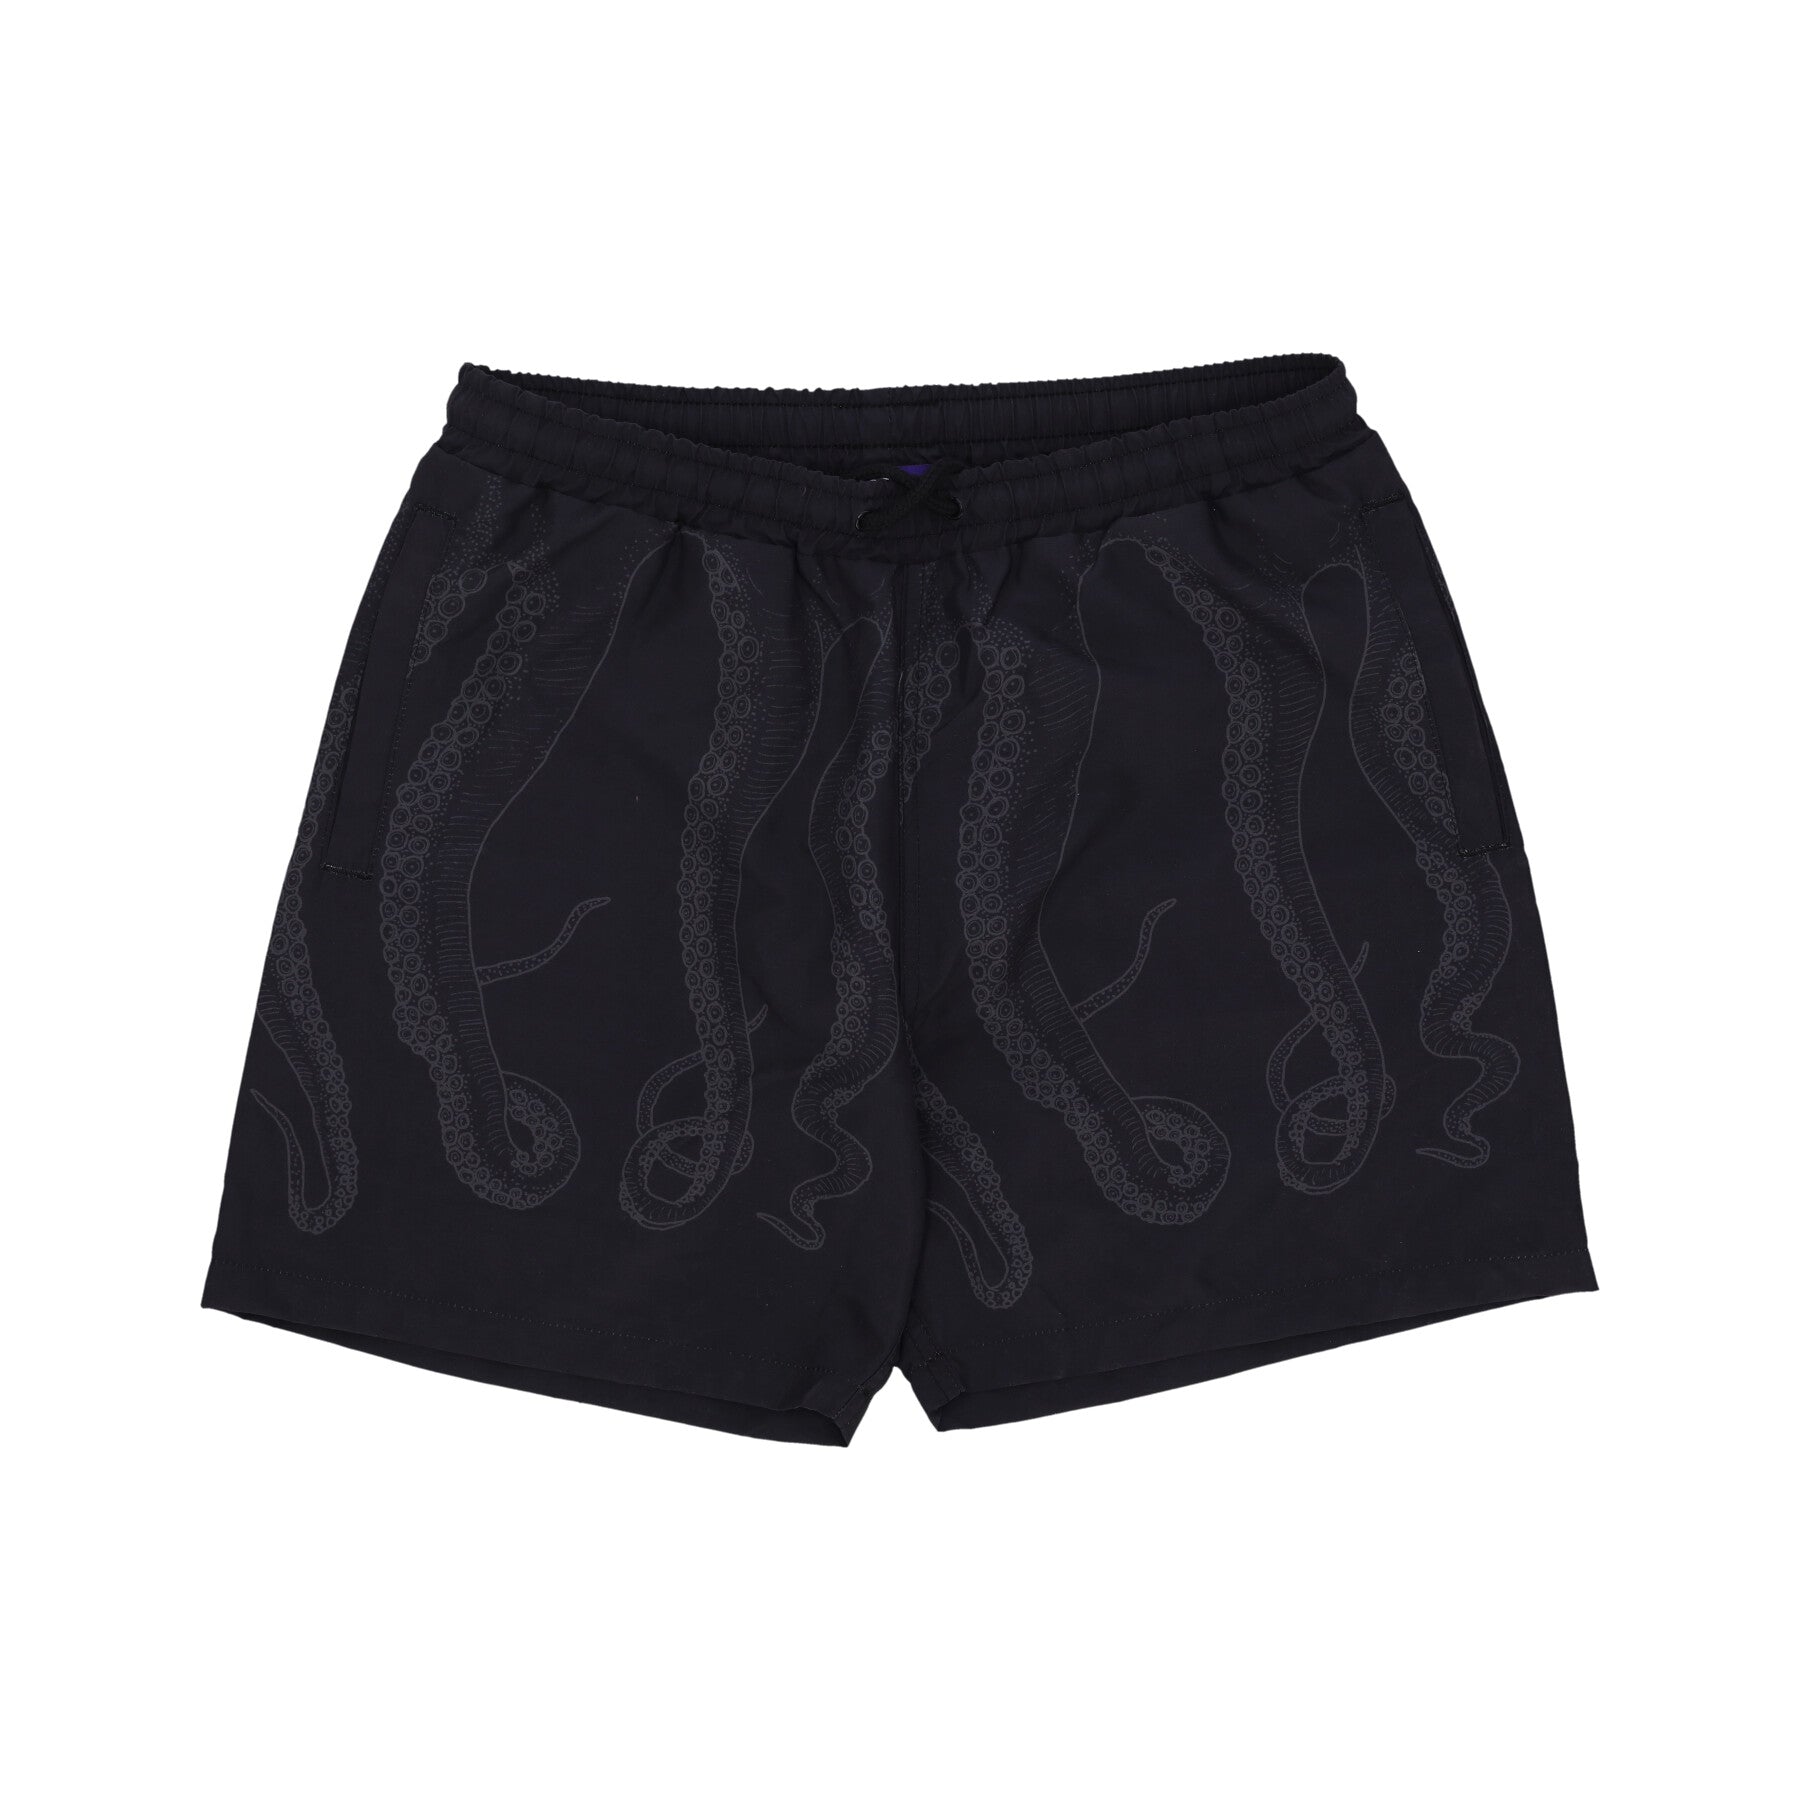 Outline Swimtrunk Men's Swim Shorts Grey/black